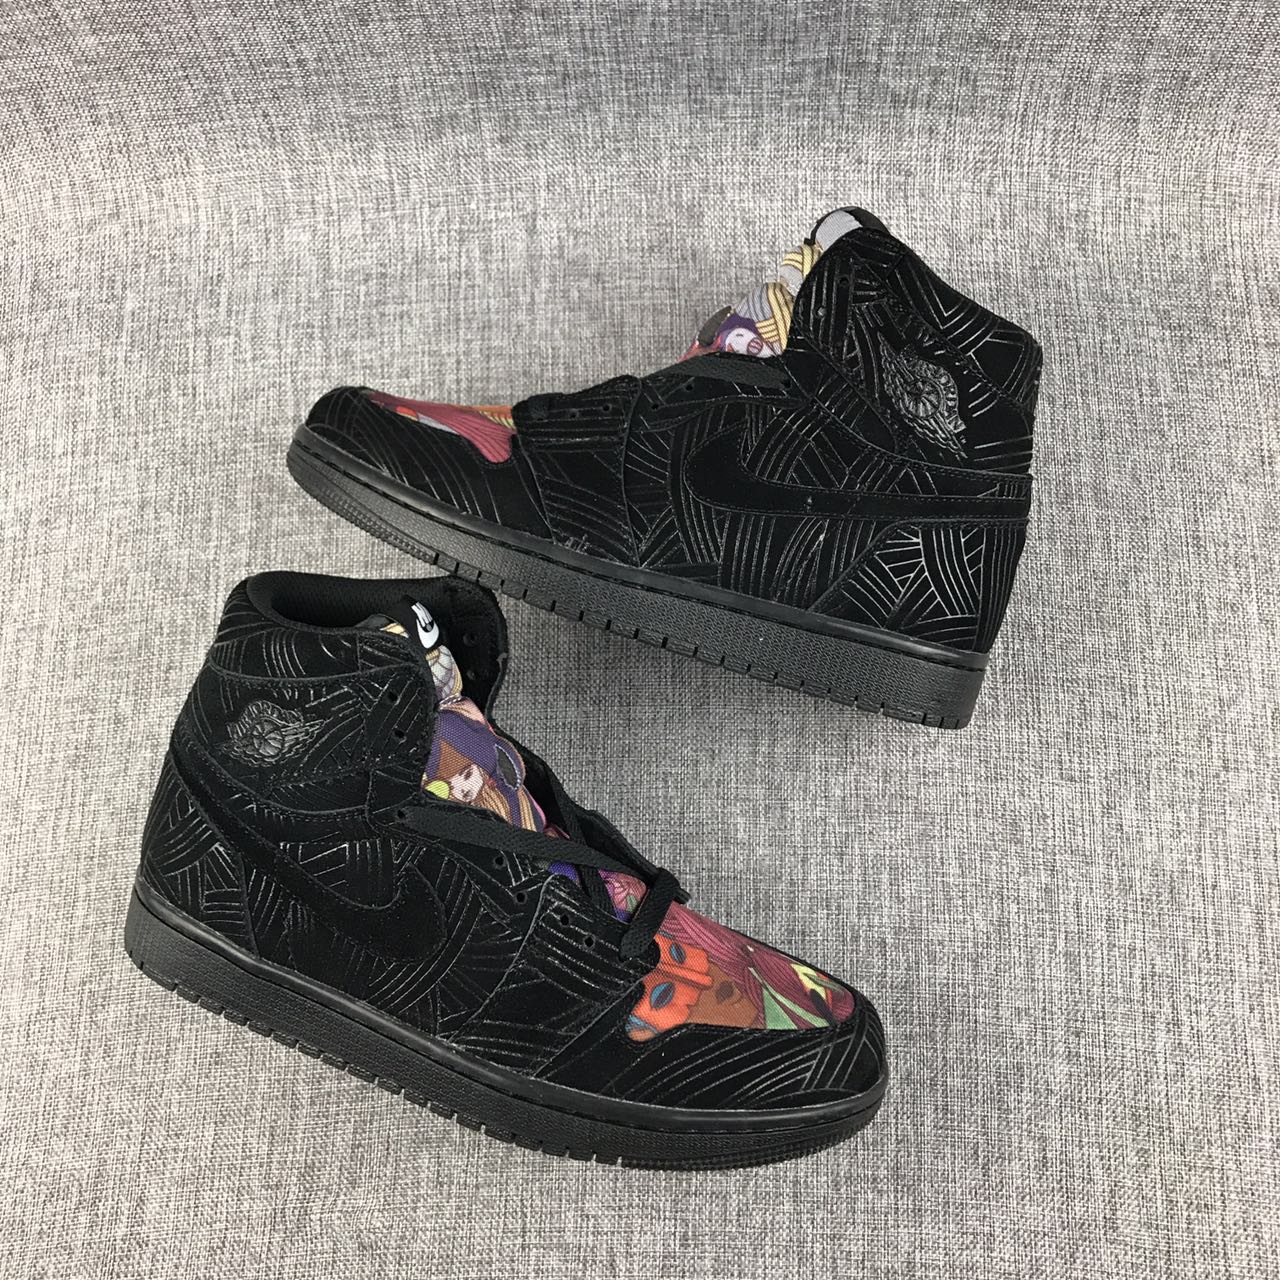 New Air Jordan 1 Laser Graffiti Black Colorful Shoes